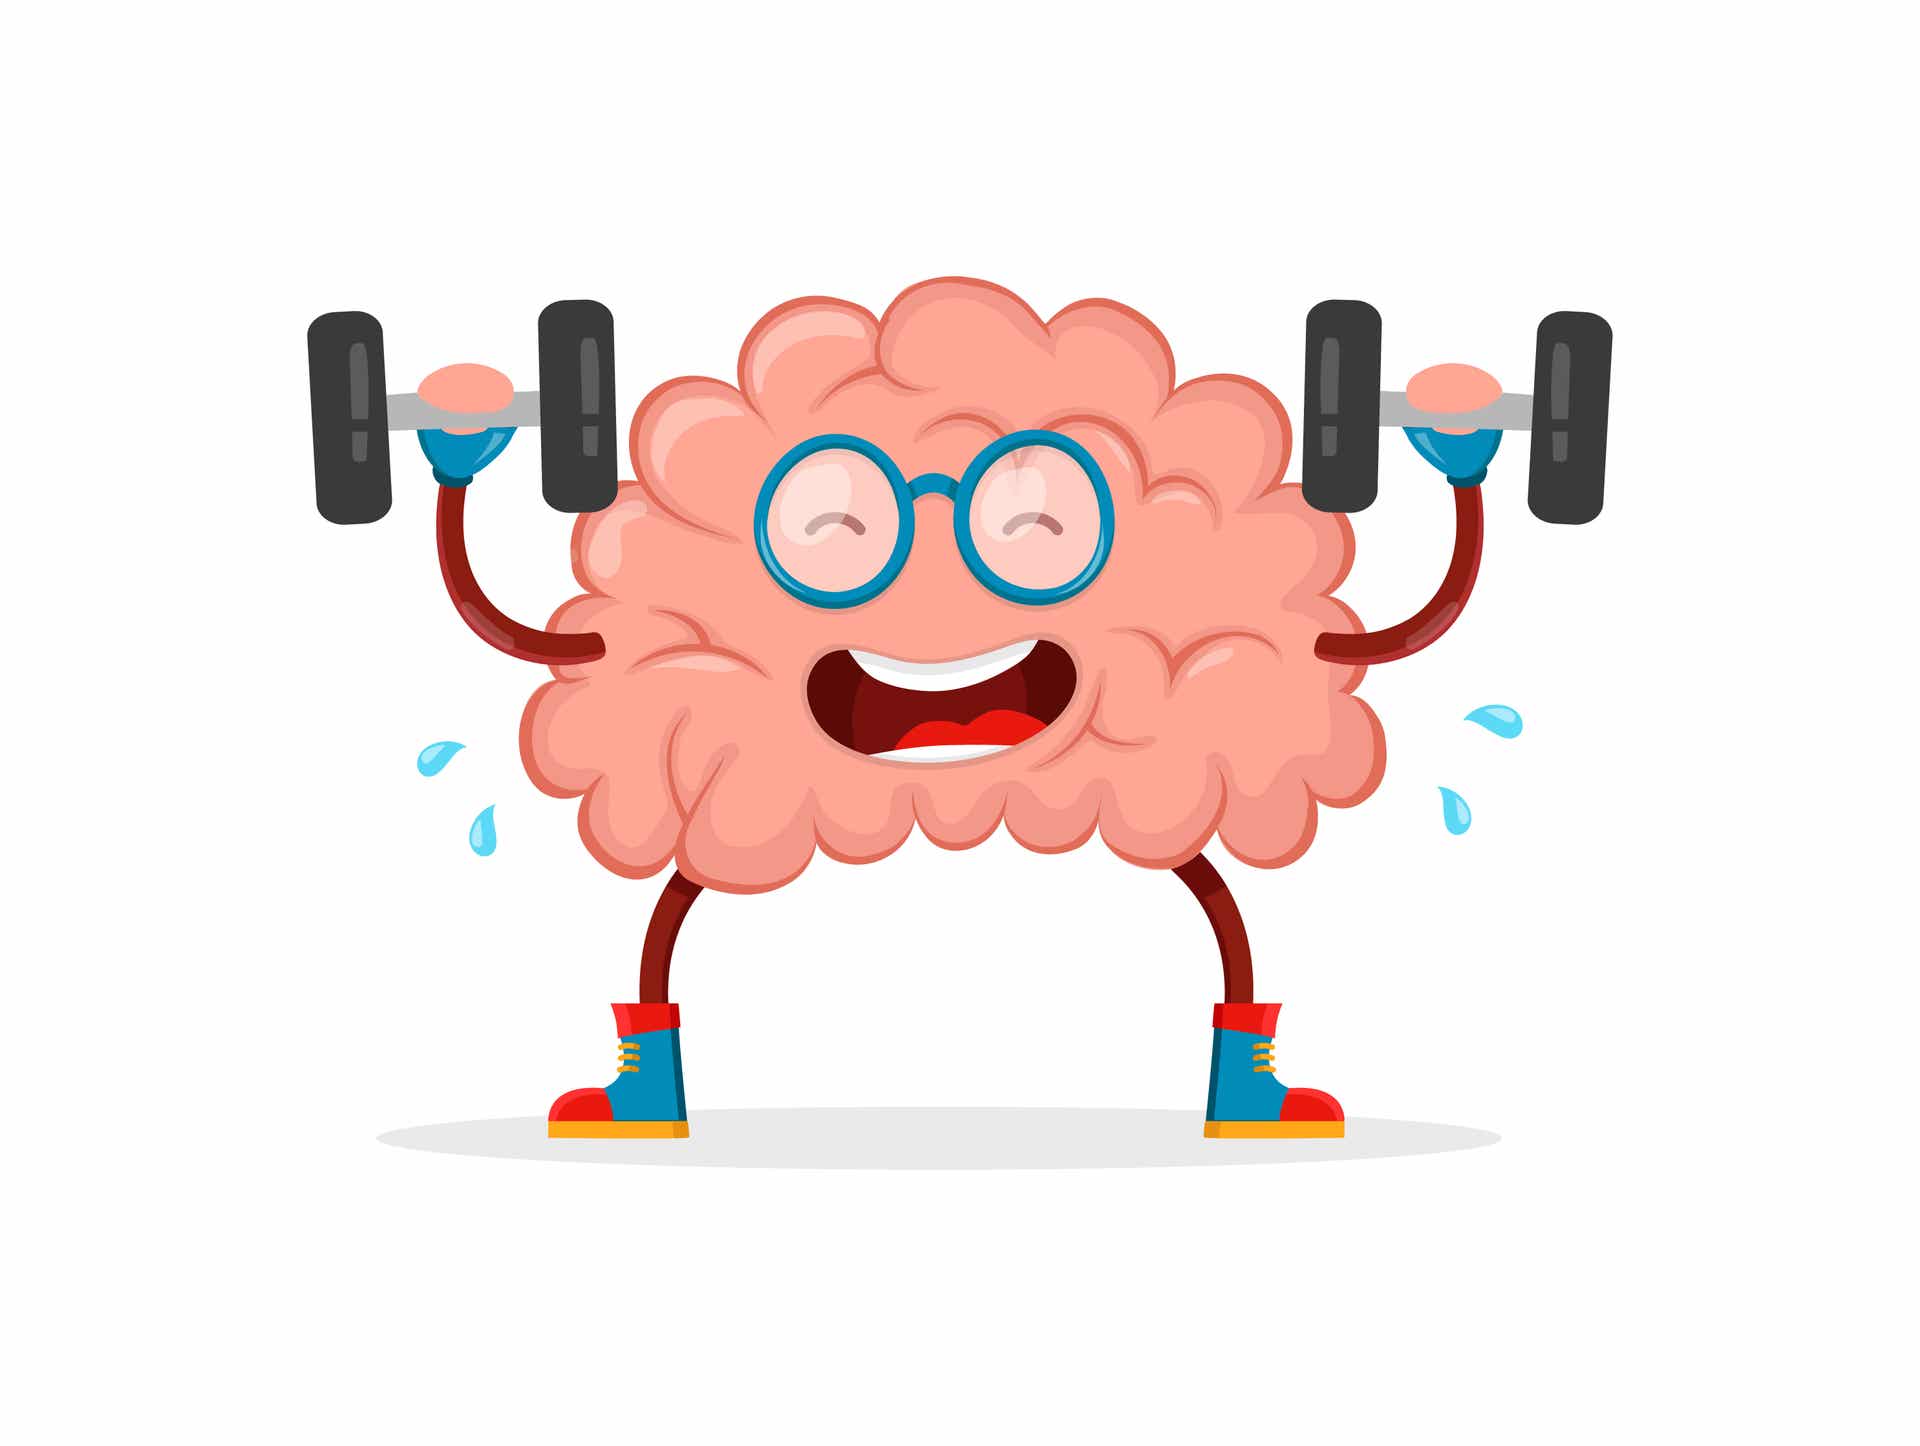 Cerebro haciendo gimnasia como ejemplo de mitos del cerebro